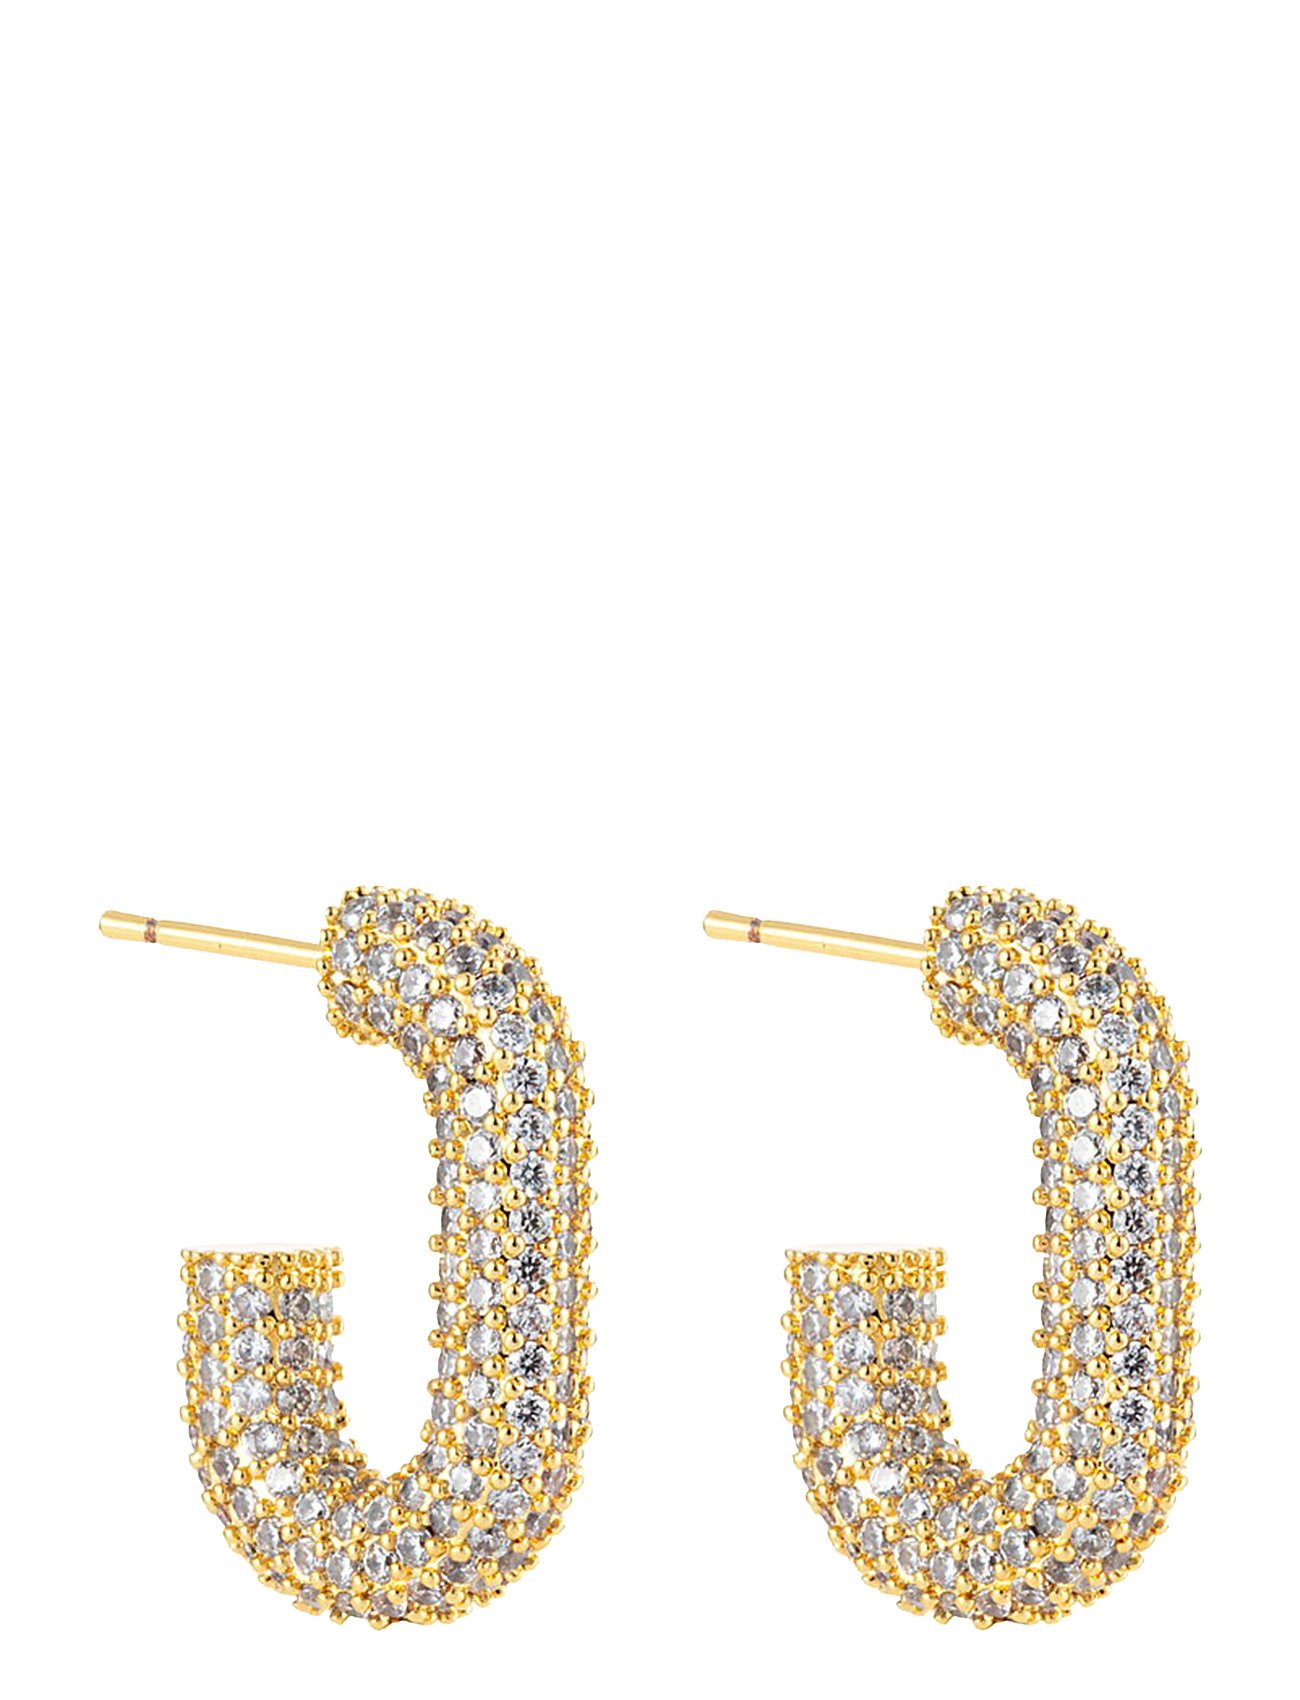 U Rock Crystal Earring Accessories Jewellery Earrings Hoops Gold By Jolima